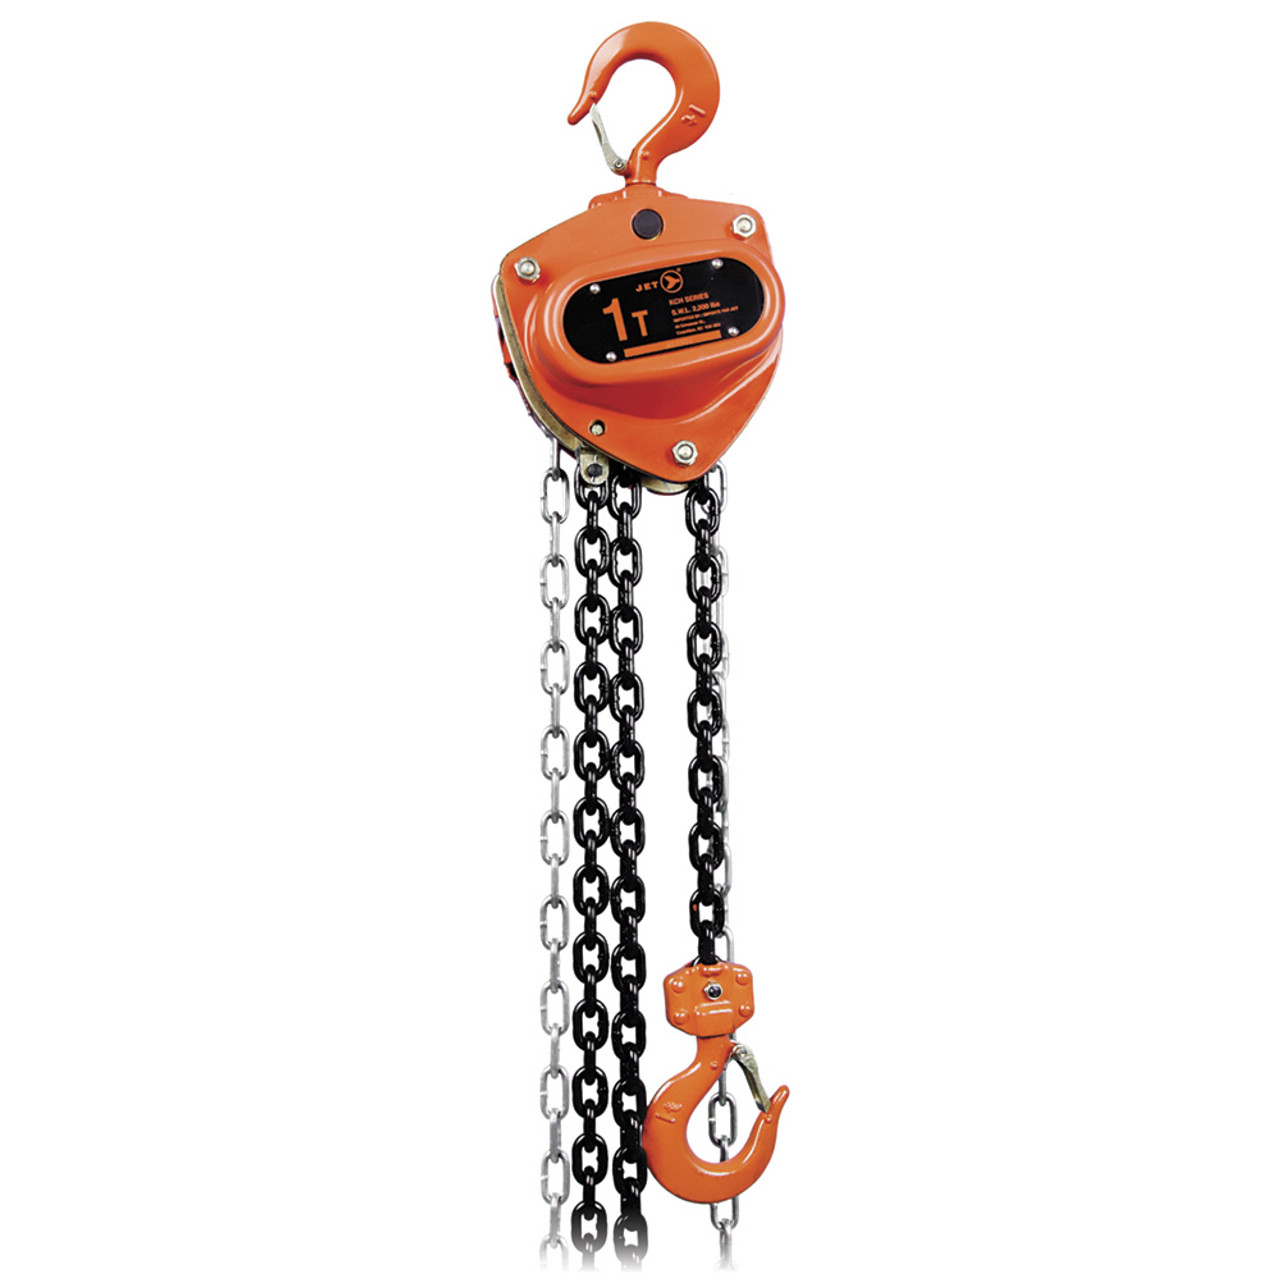 5T @ 20' Lift KCH w/Overload Protection Chain Hoist  101356